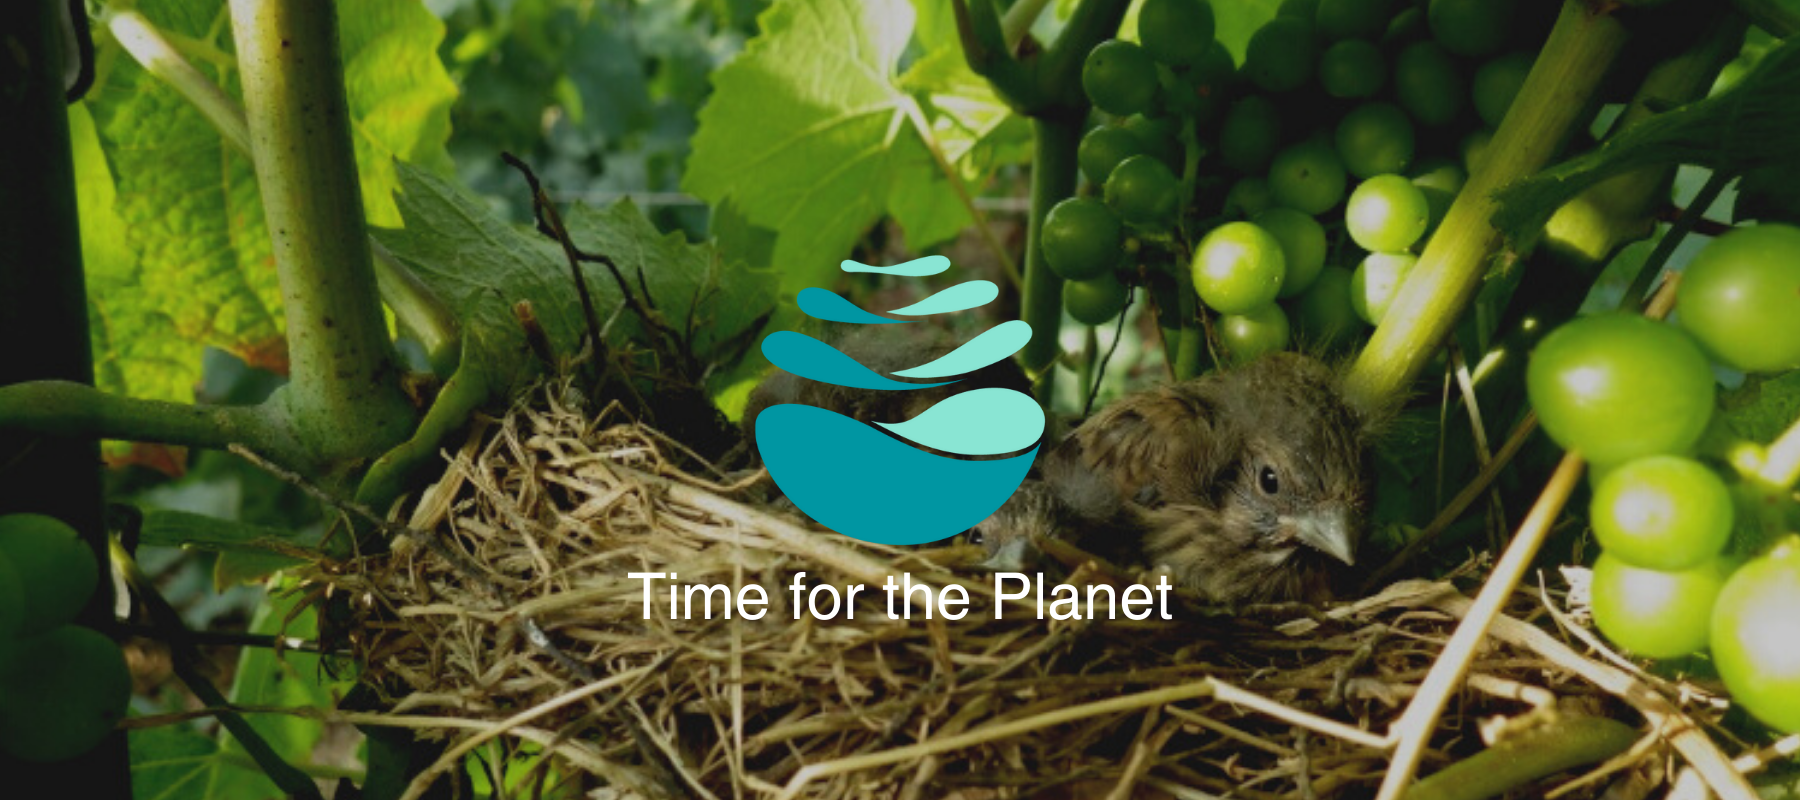 Vie.gne s'engage et s'associe à Time for the Planet TFTP pour lutter contre le réchauffement climatique et préserver la biodiversité et le vivant sur notre planète. Rejoignez le premier mouvement citoyen pour le climat.